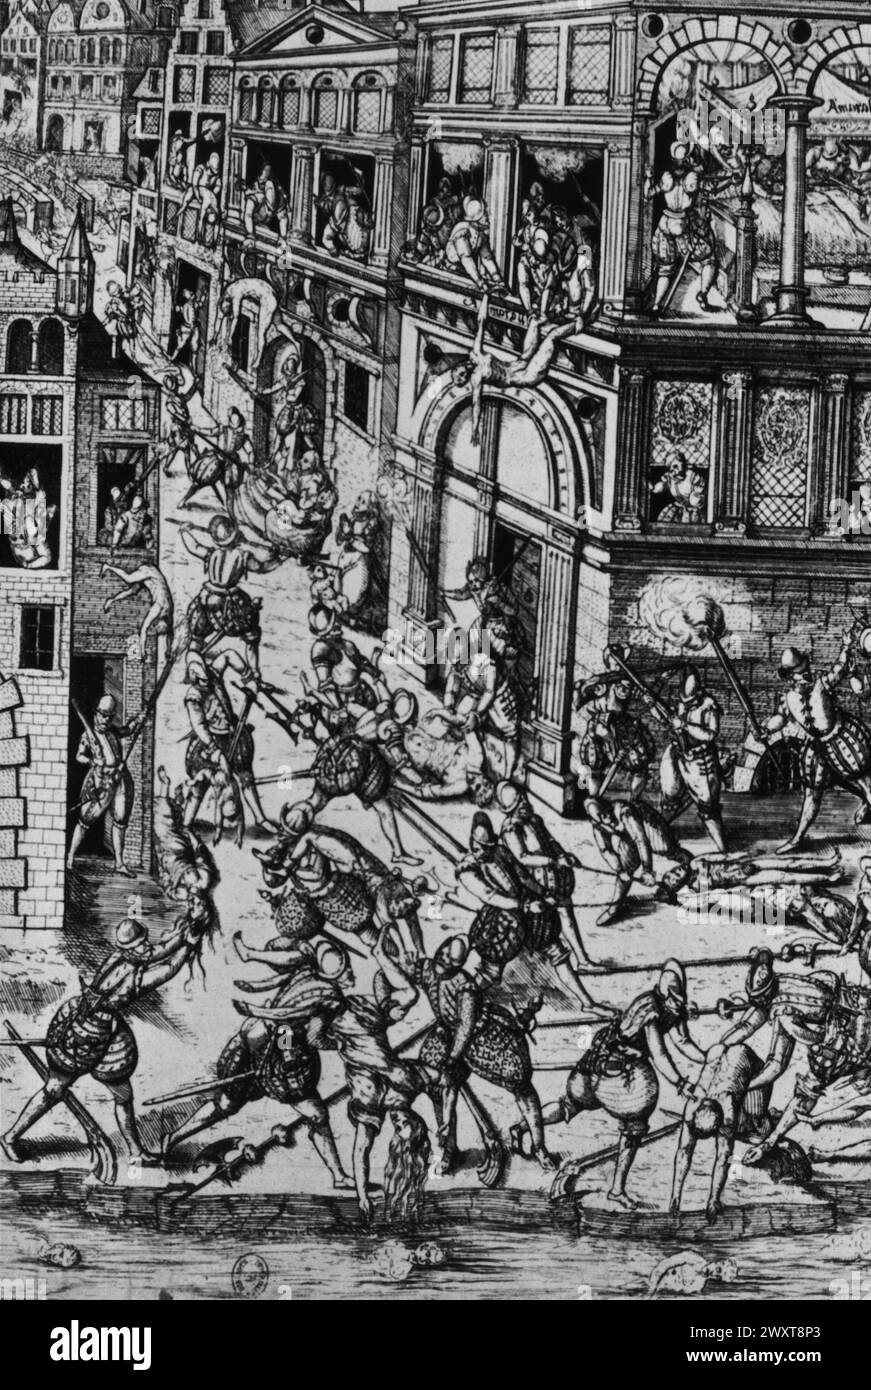 Détail du massacre du jour de St.Bartholomew, 1572, France, gravure, XVIe siècle Banque D'Images